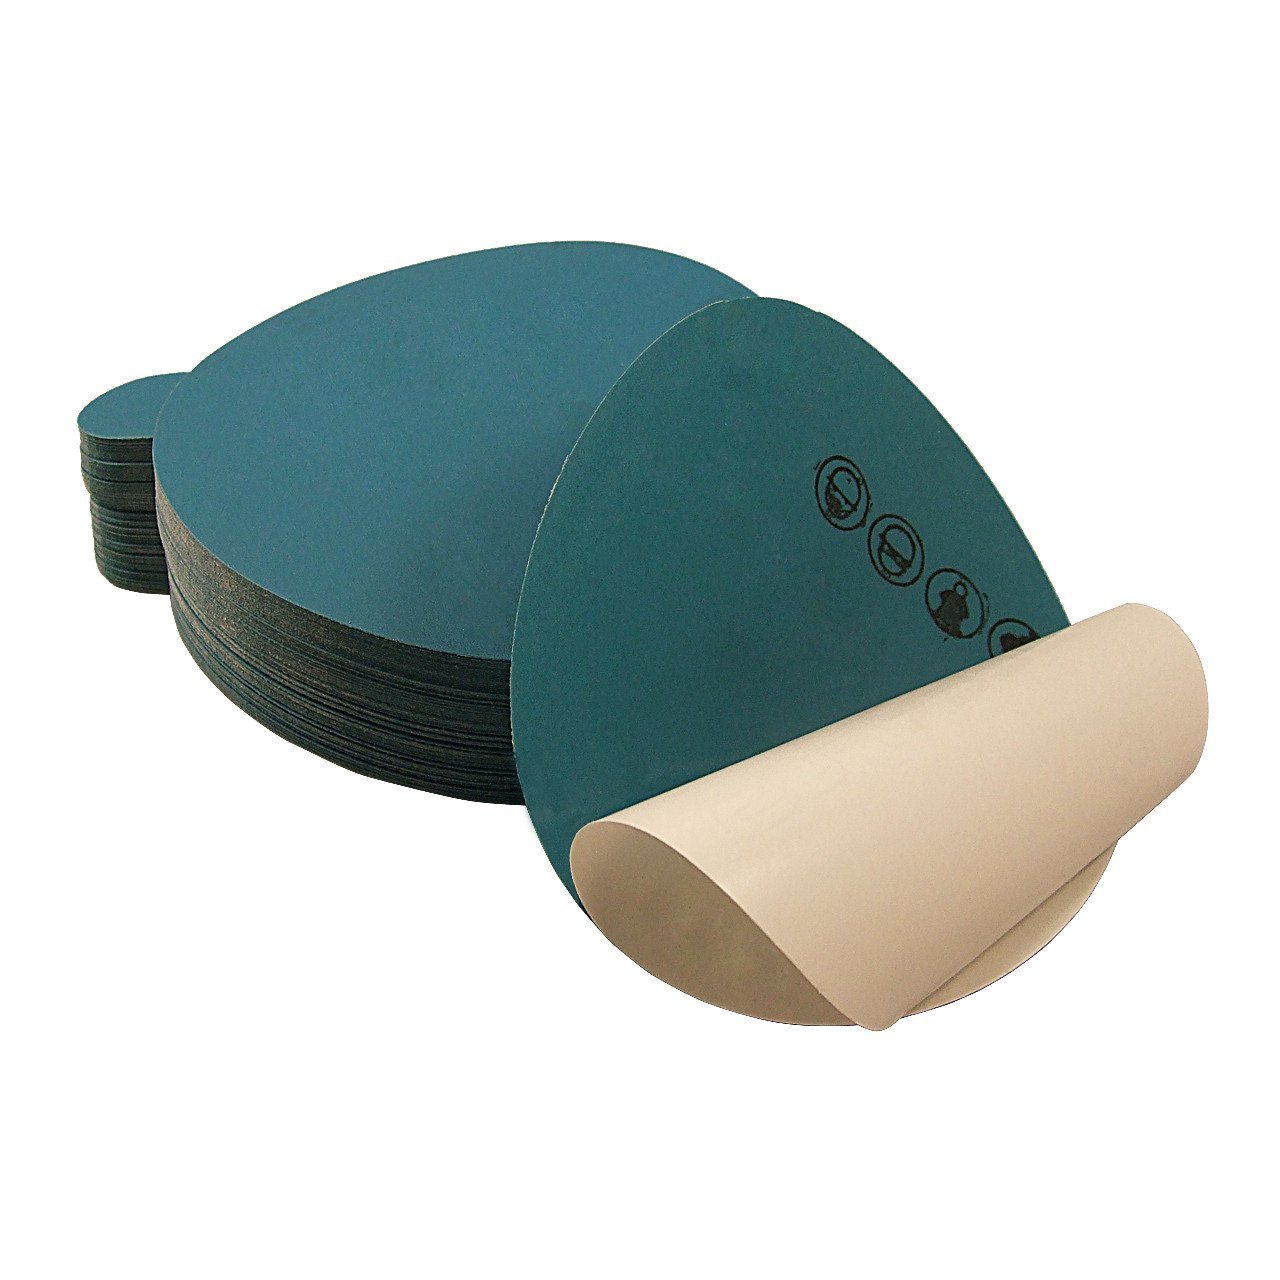 Sanding Discs  Buy a 5 Inch Sanding Disc Assortment Pack Online - Stone  Coat Countertops